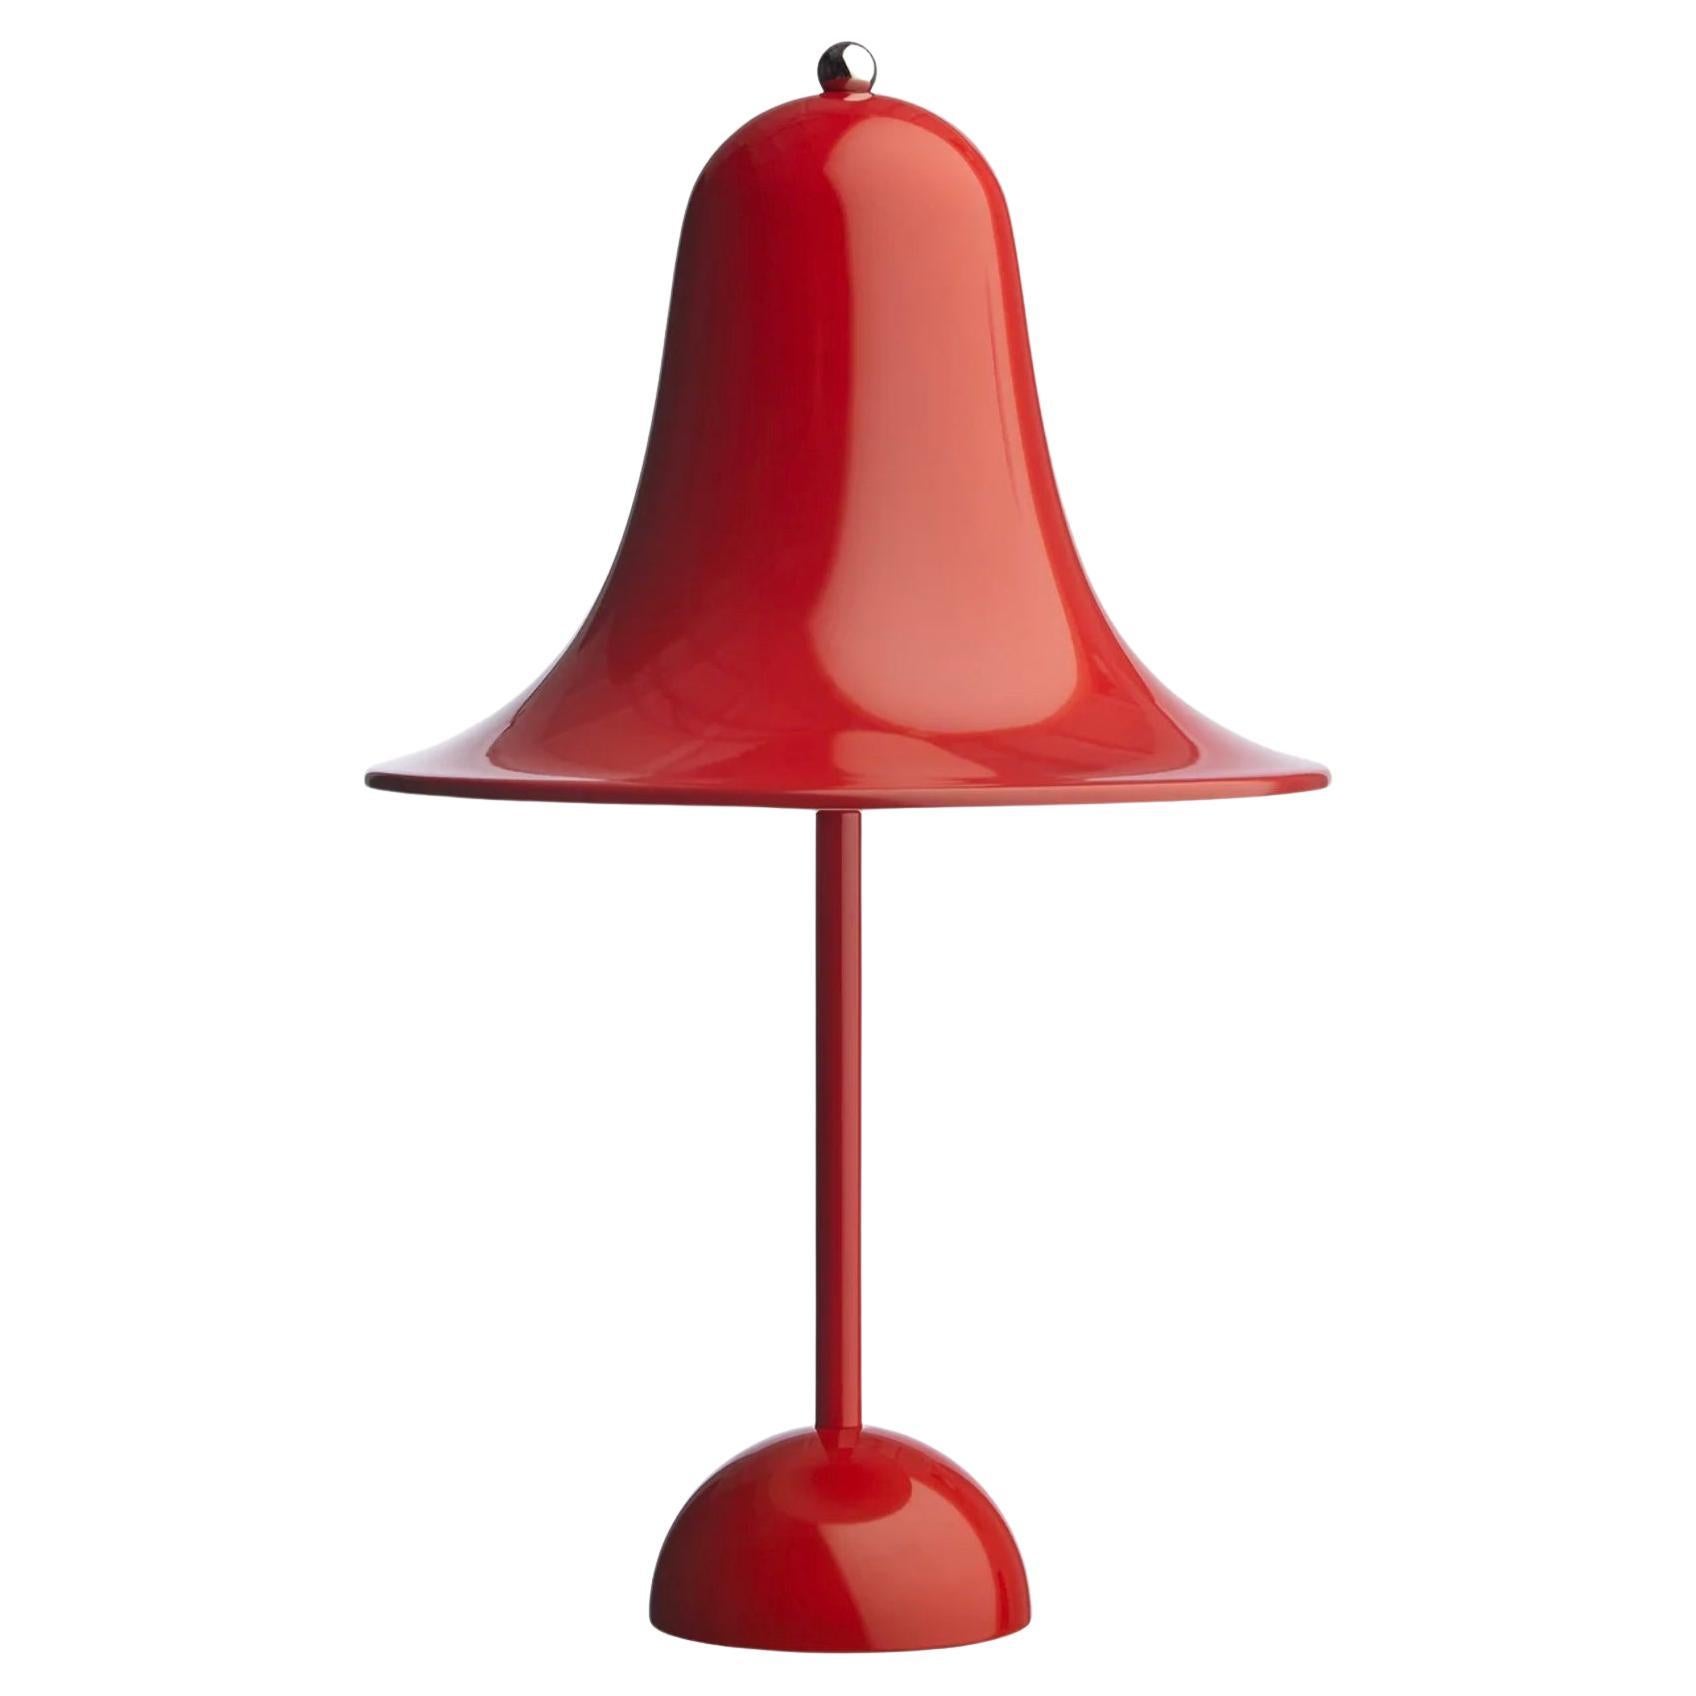 Verner Panton 'Pantop' Table Lamp in 'Bright Red' 1980 for Verpan For Sale